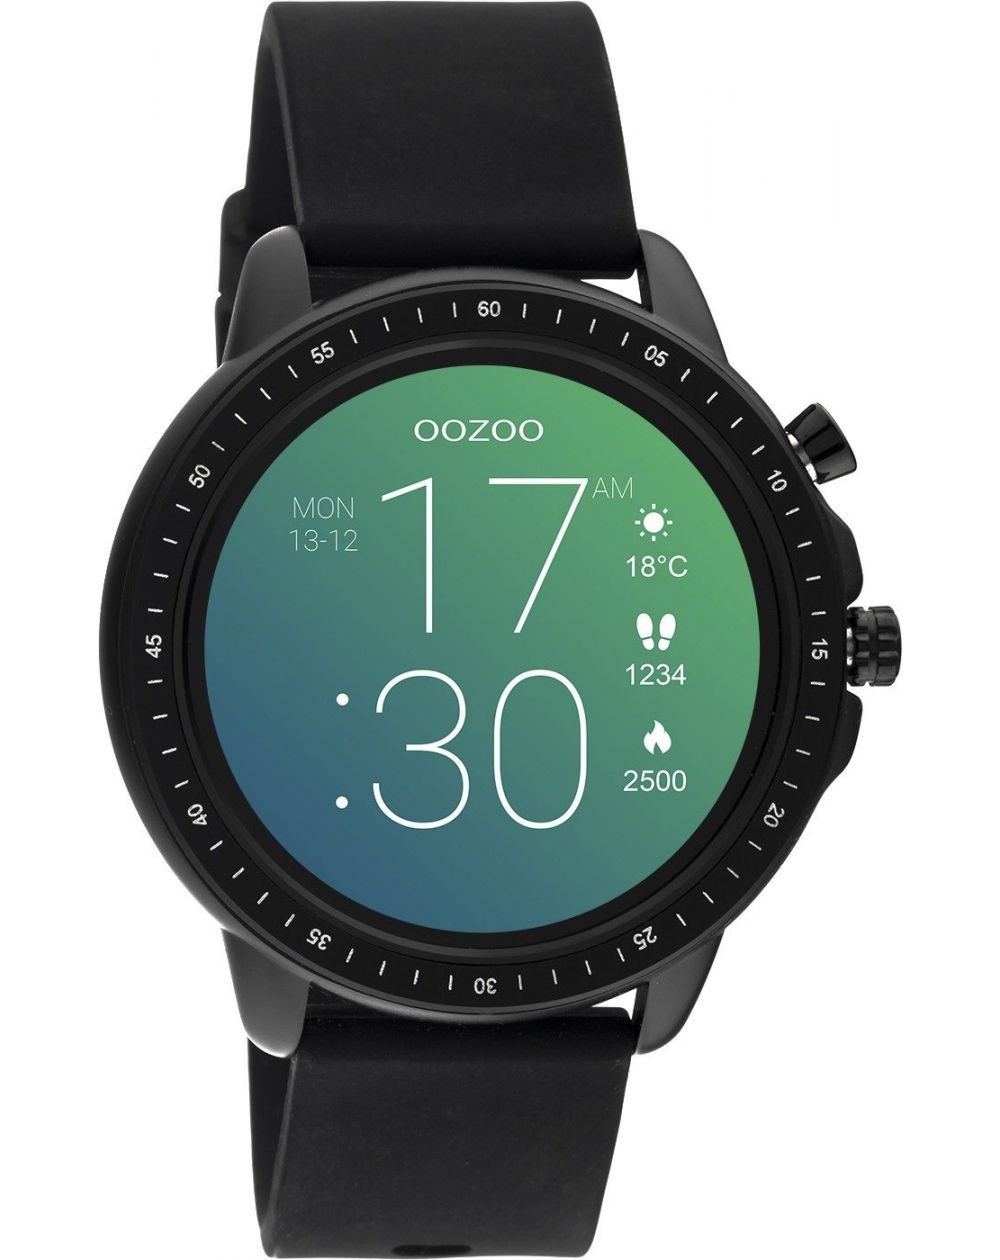 Montre Oozoo Q00304 - Smartwatch - Marque OOZOO - Livraison gratuite